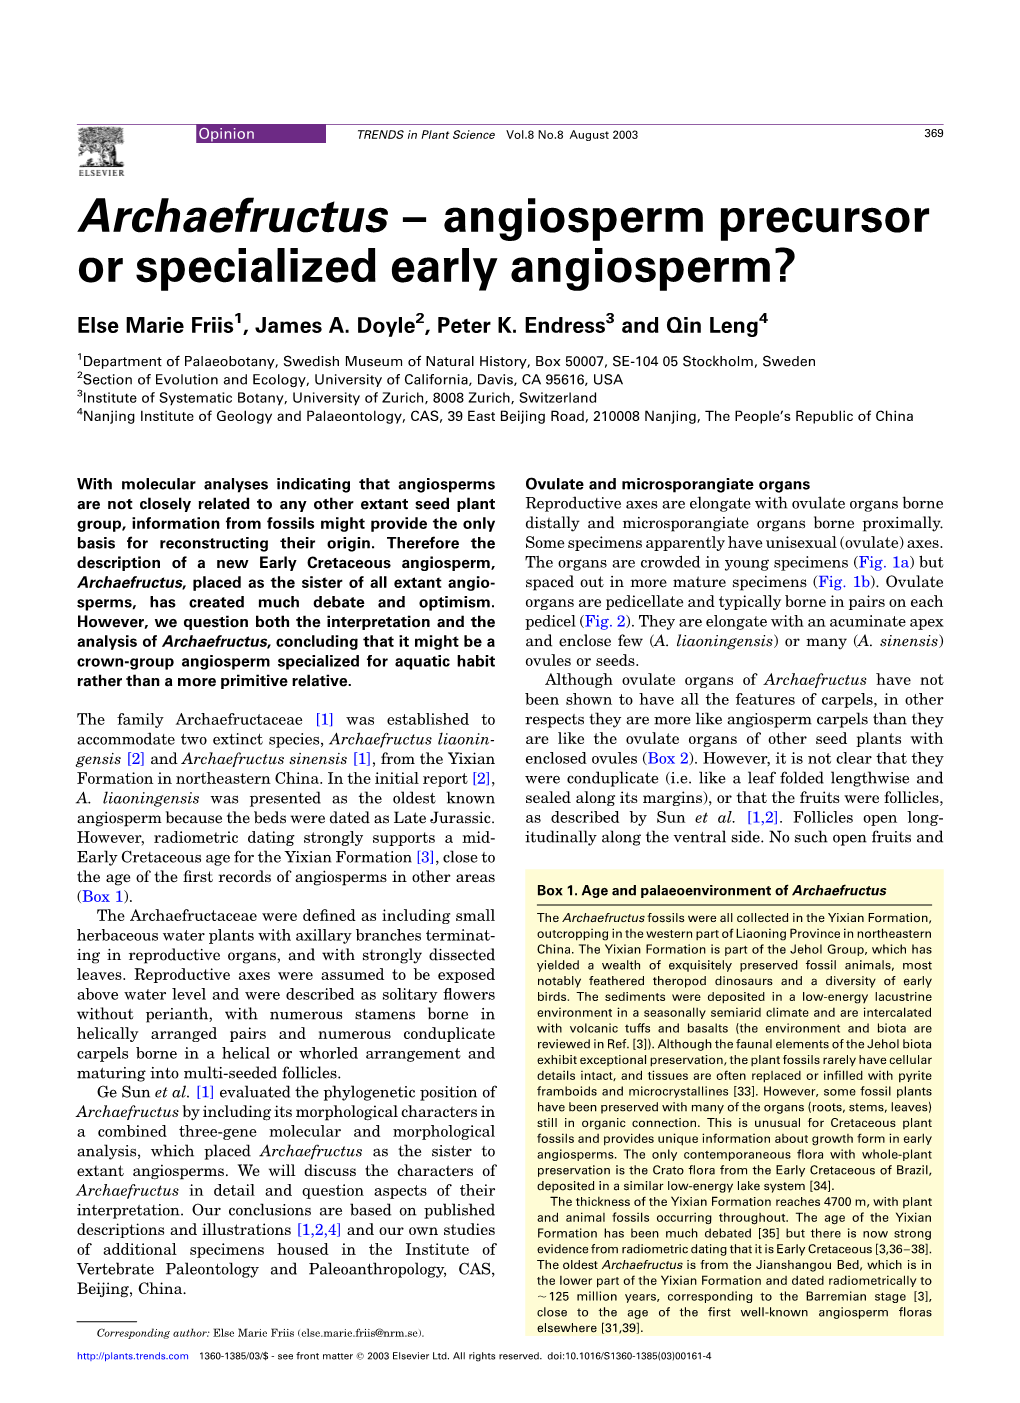 Archaefructus – Angiosperm Precursor Or Specialized Early Angiosperm?